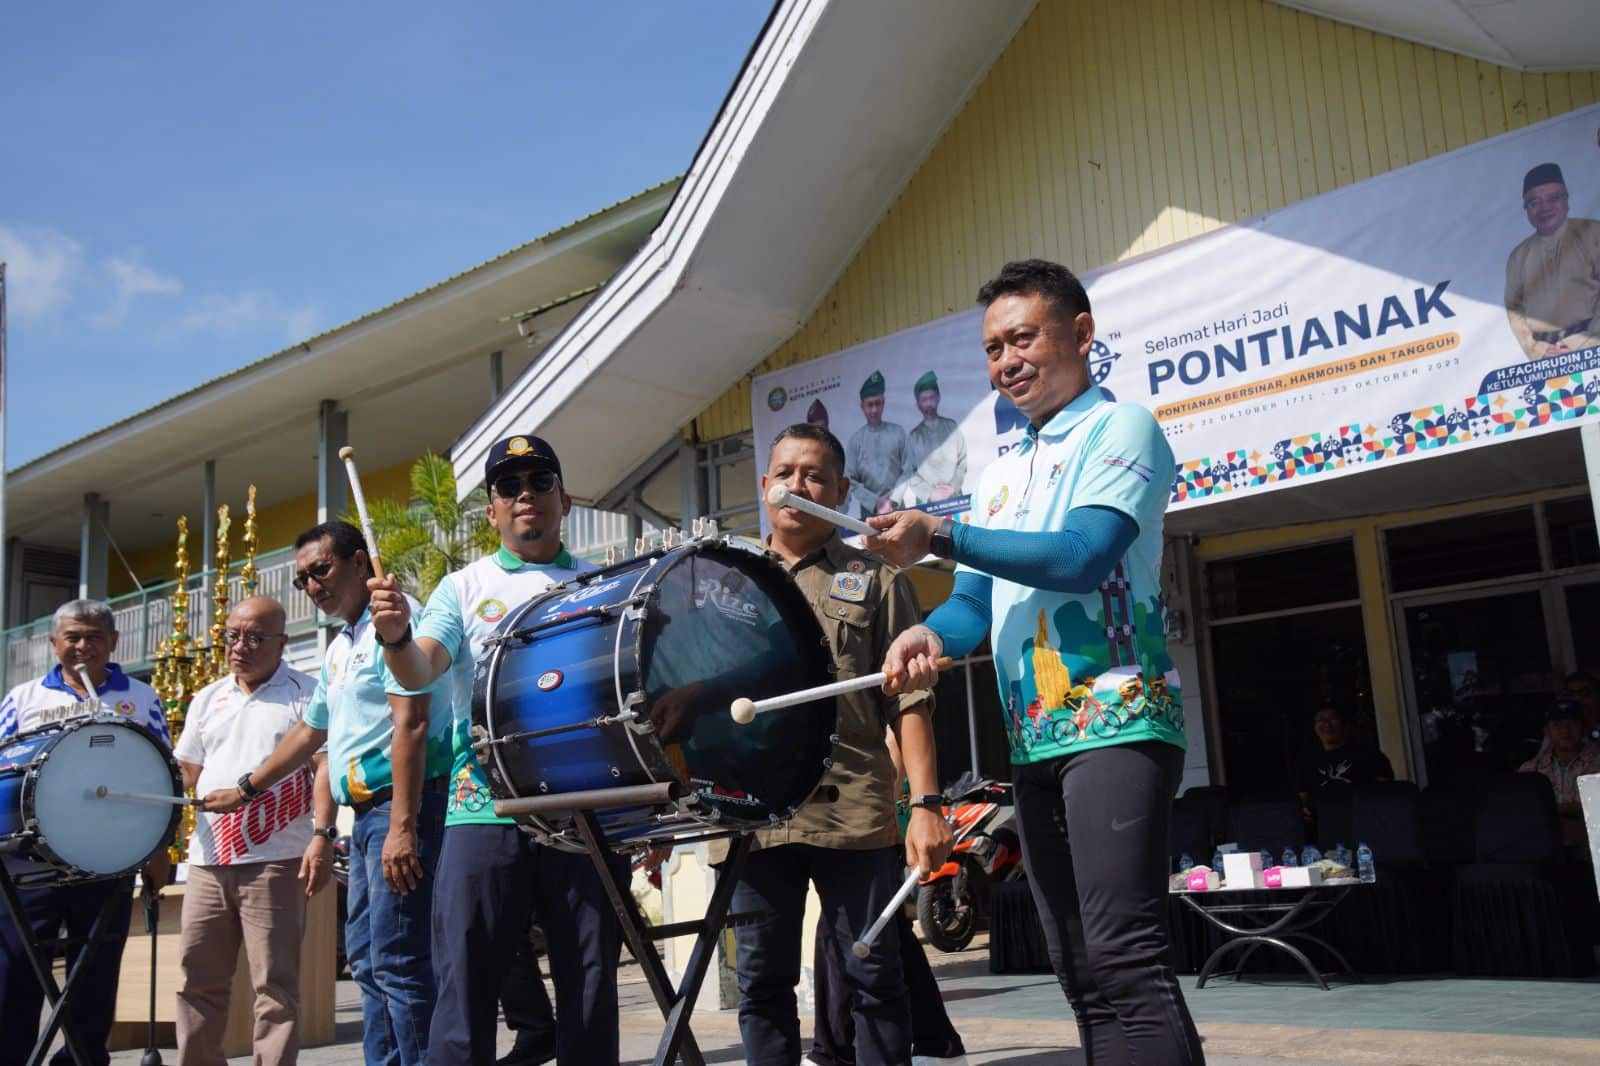 Wali Kota Pontianak, Edi Rusdi Kamtono menabuh drumband menandai dimulainya Pontianak Open Drumband Competition. (Foto: Prokopim Pontianak)